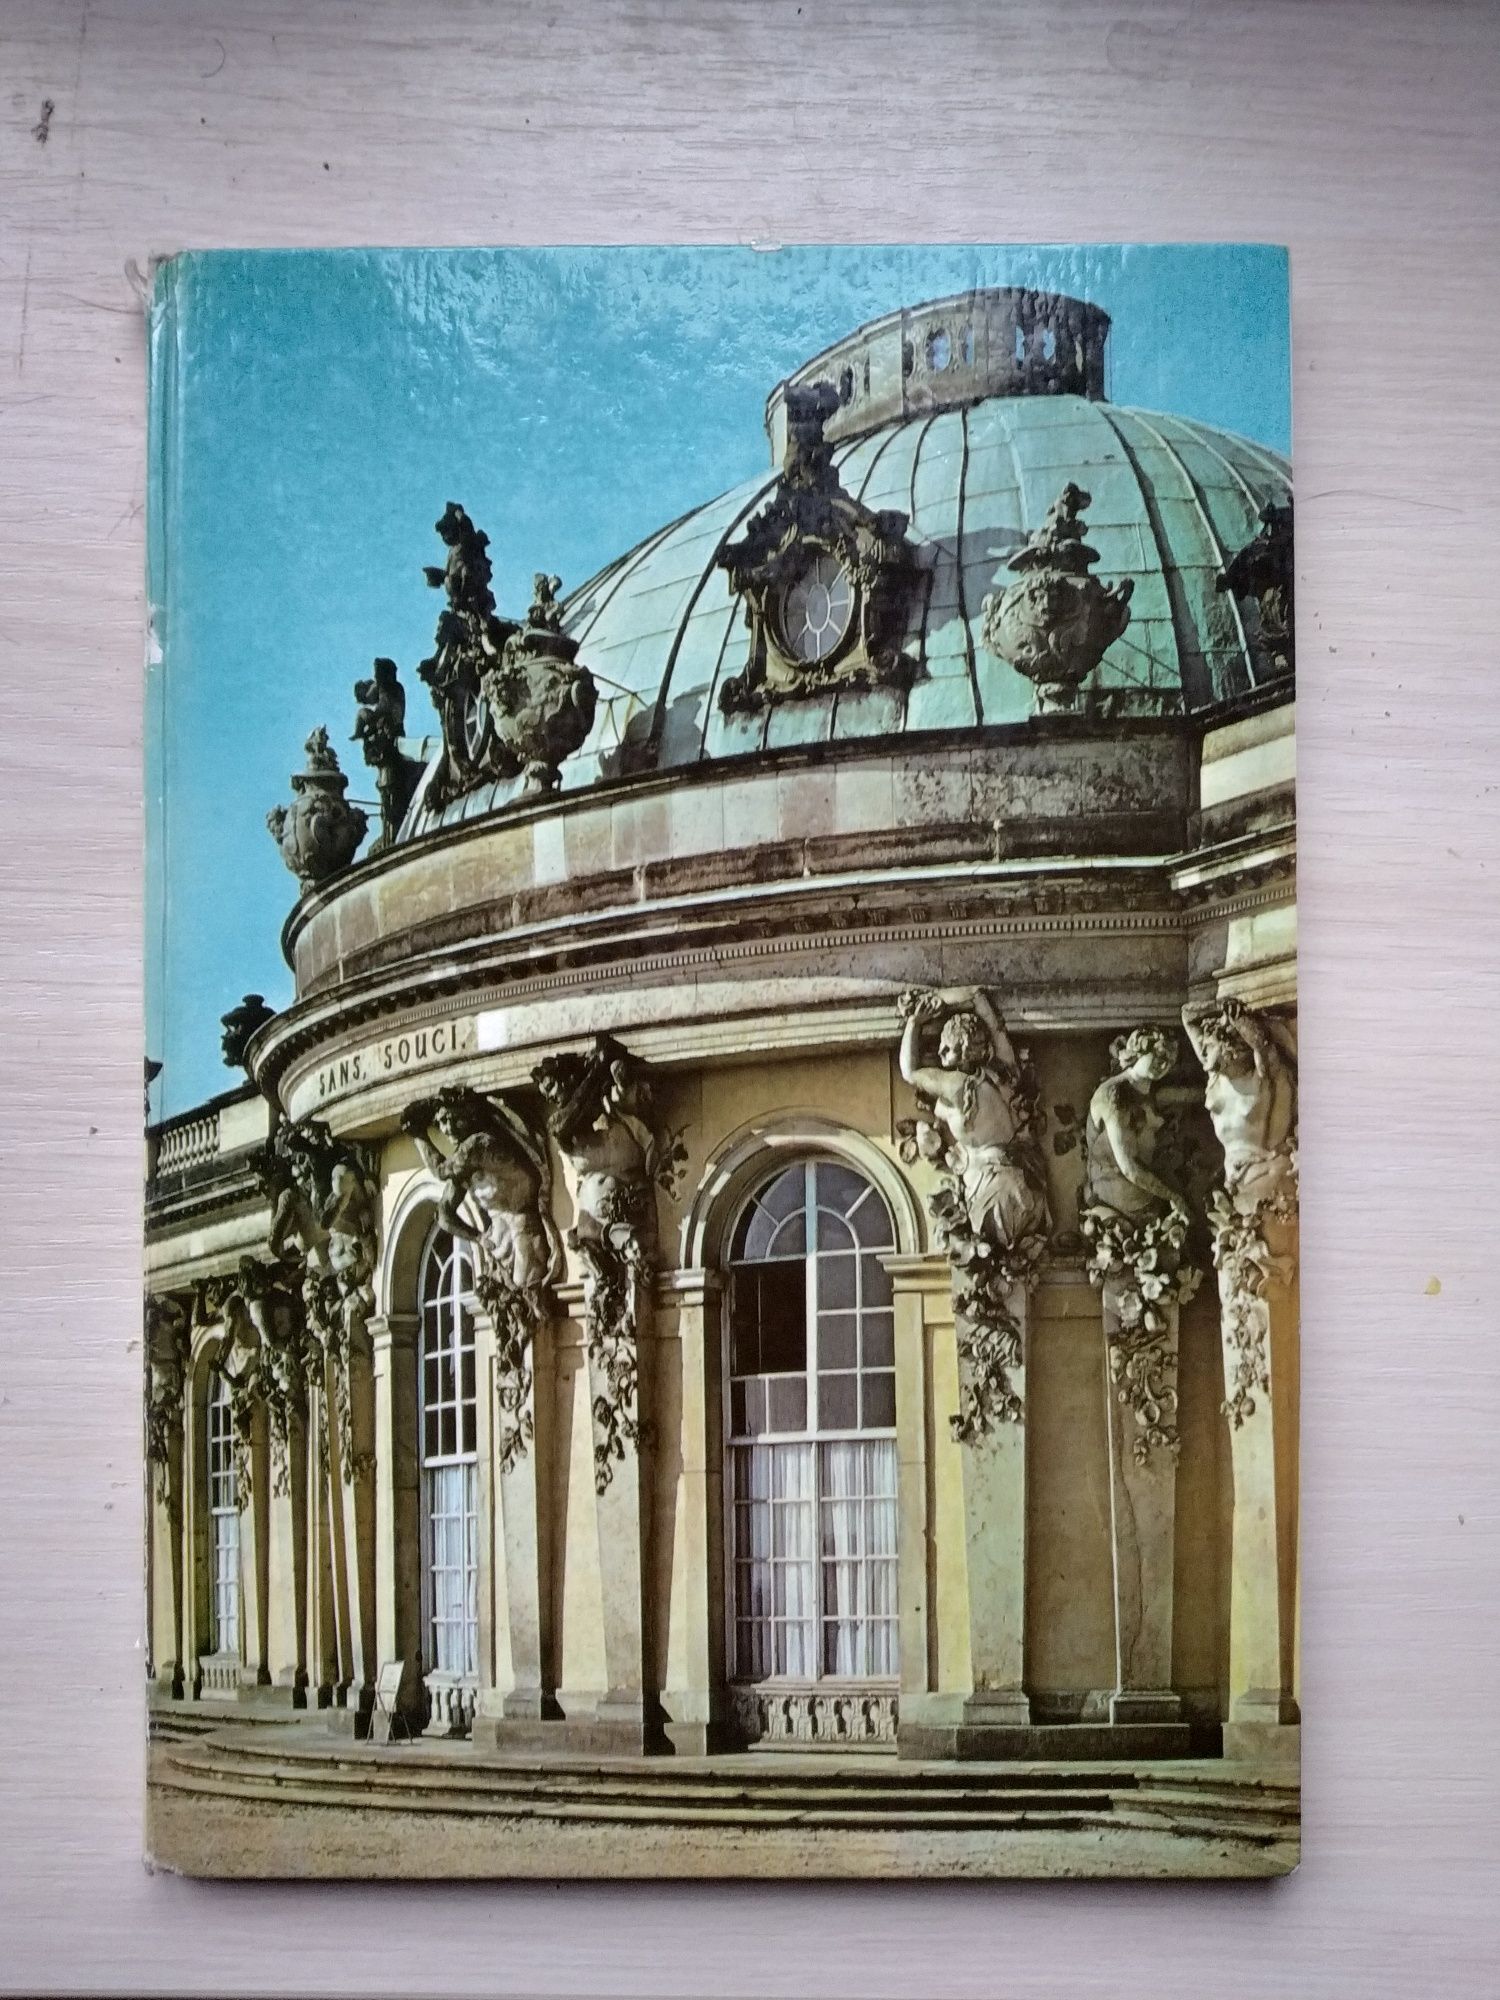 Книга-фотоальбом 1976 про парк Сансуси на немецком